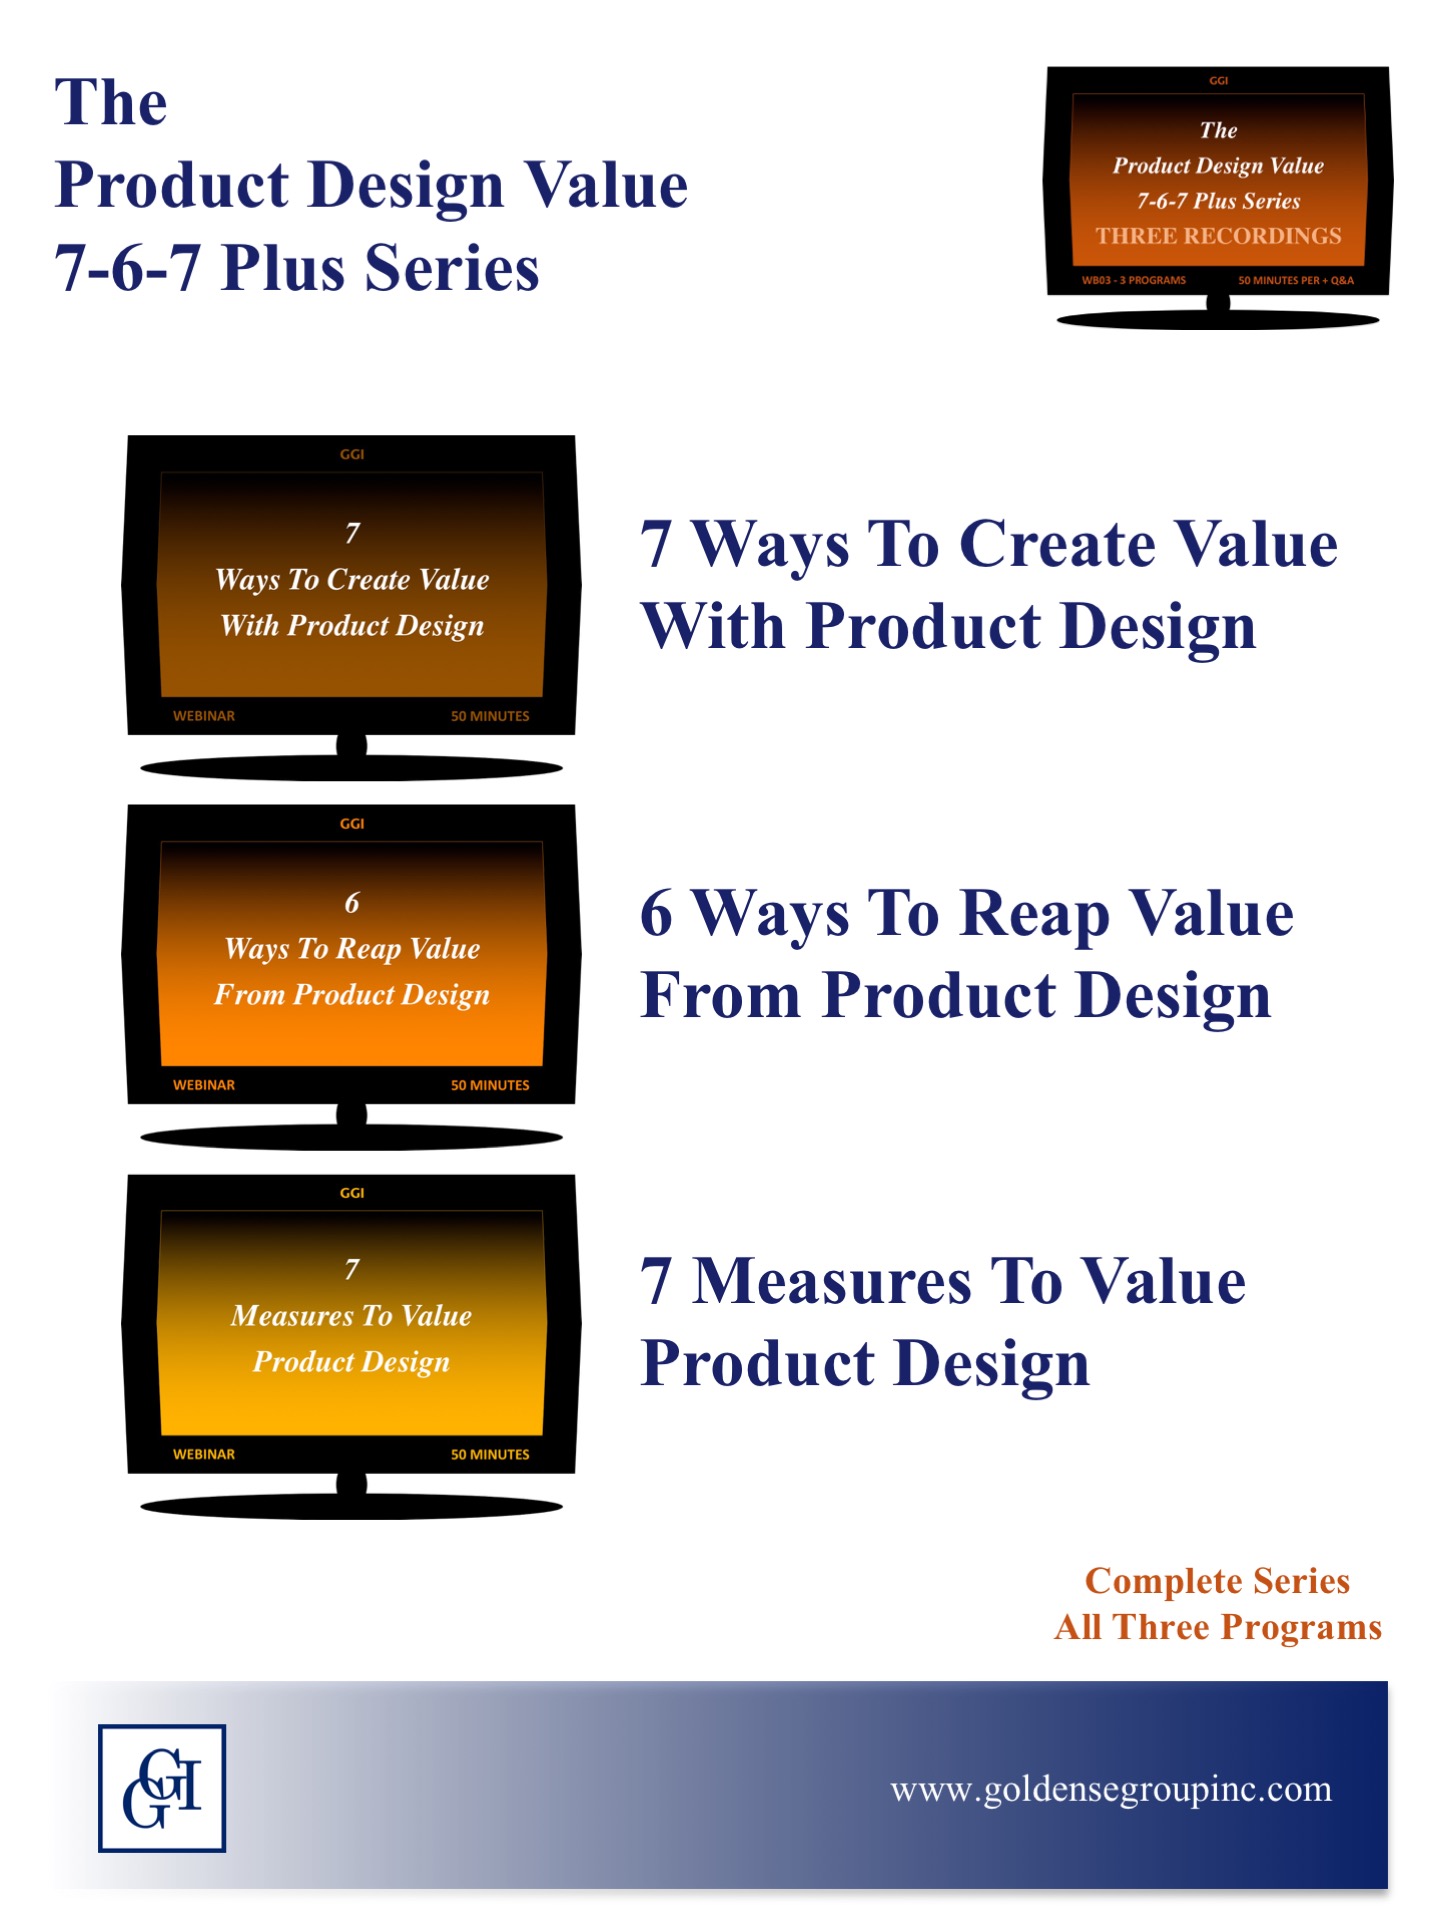 The Product Design Value 7-6-7 Plus Series